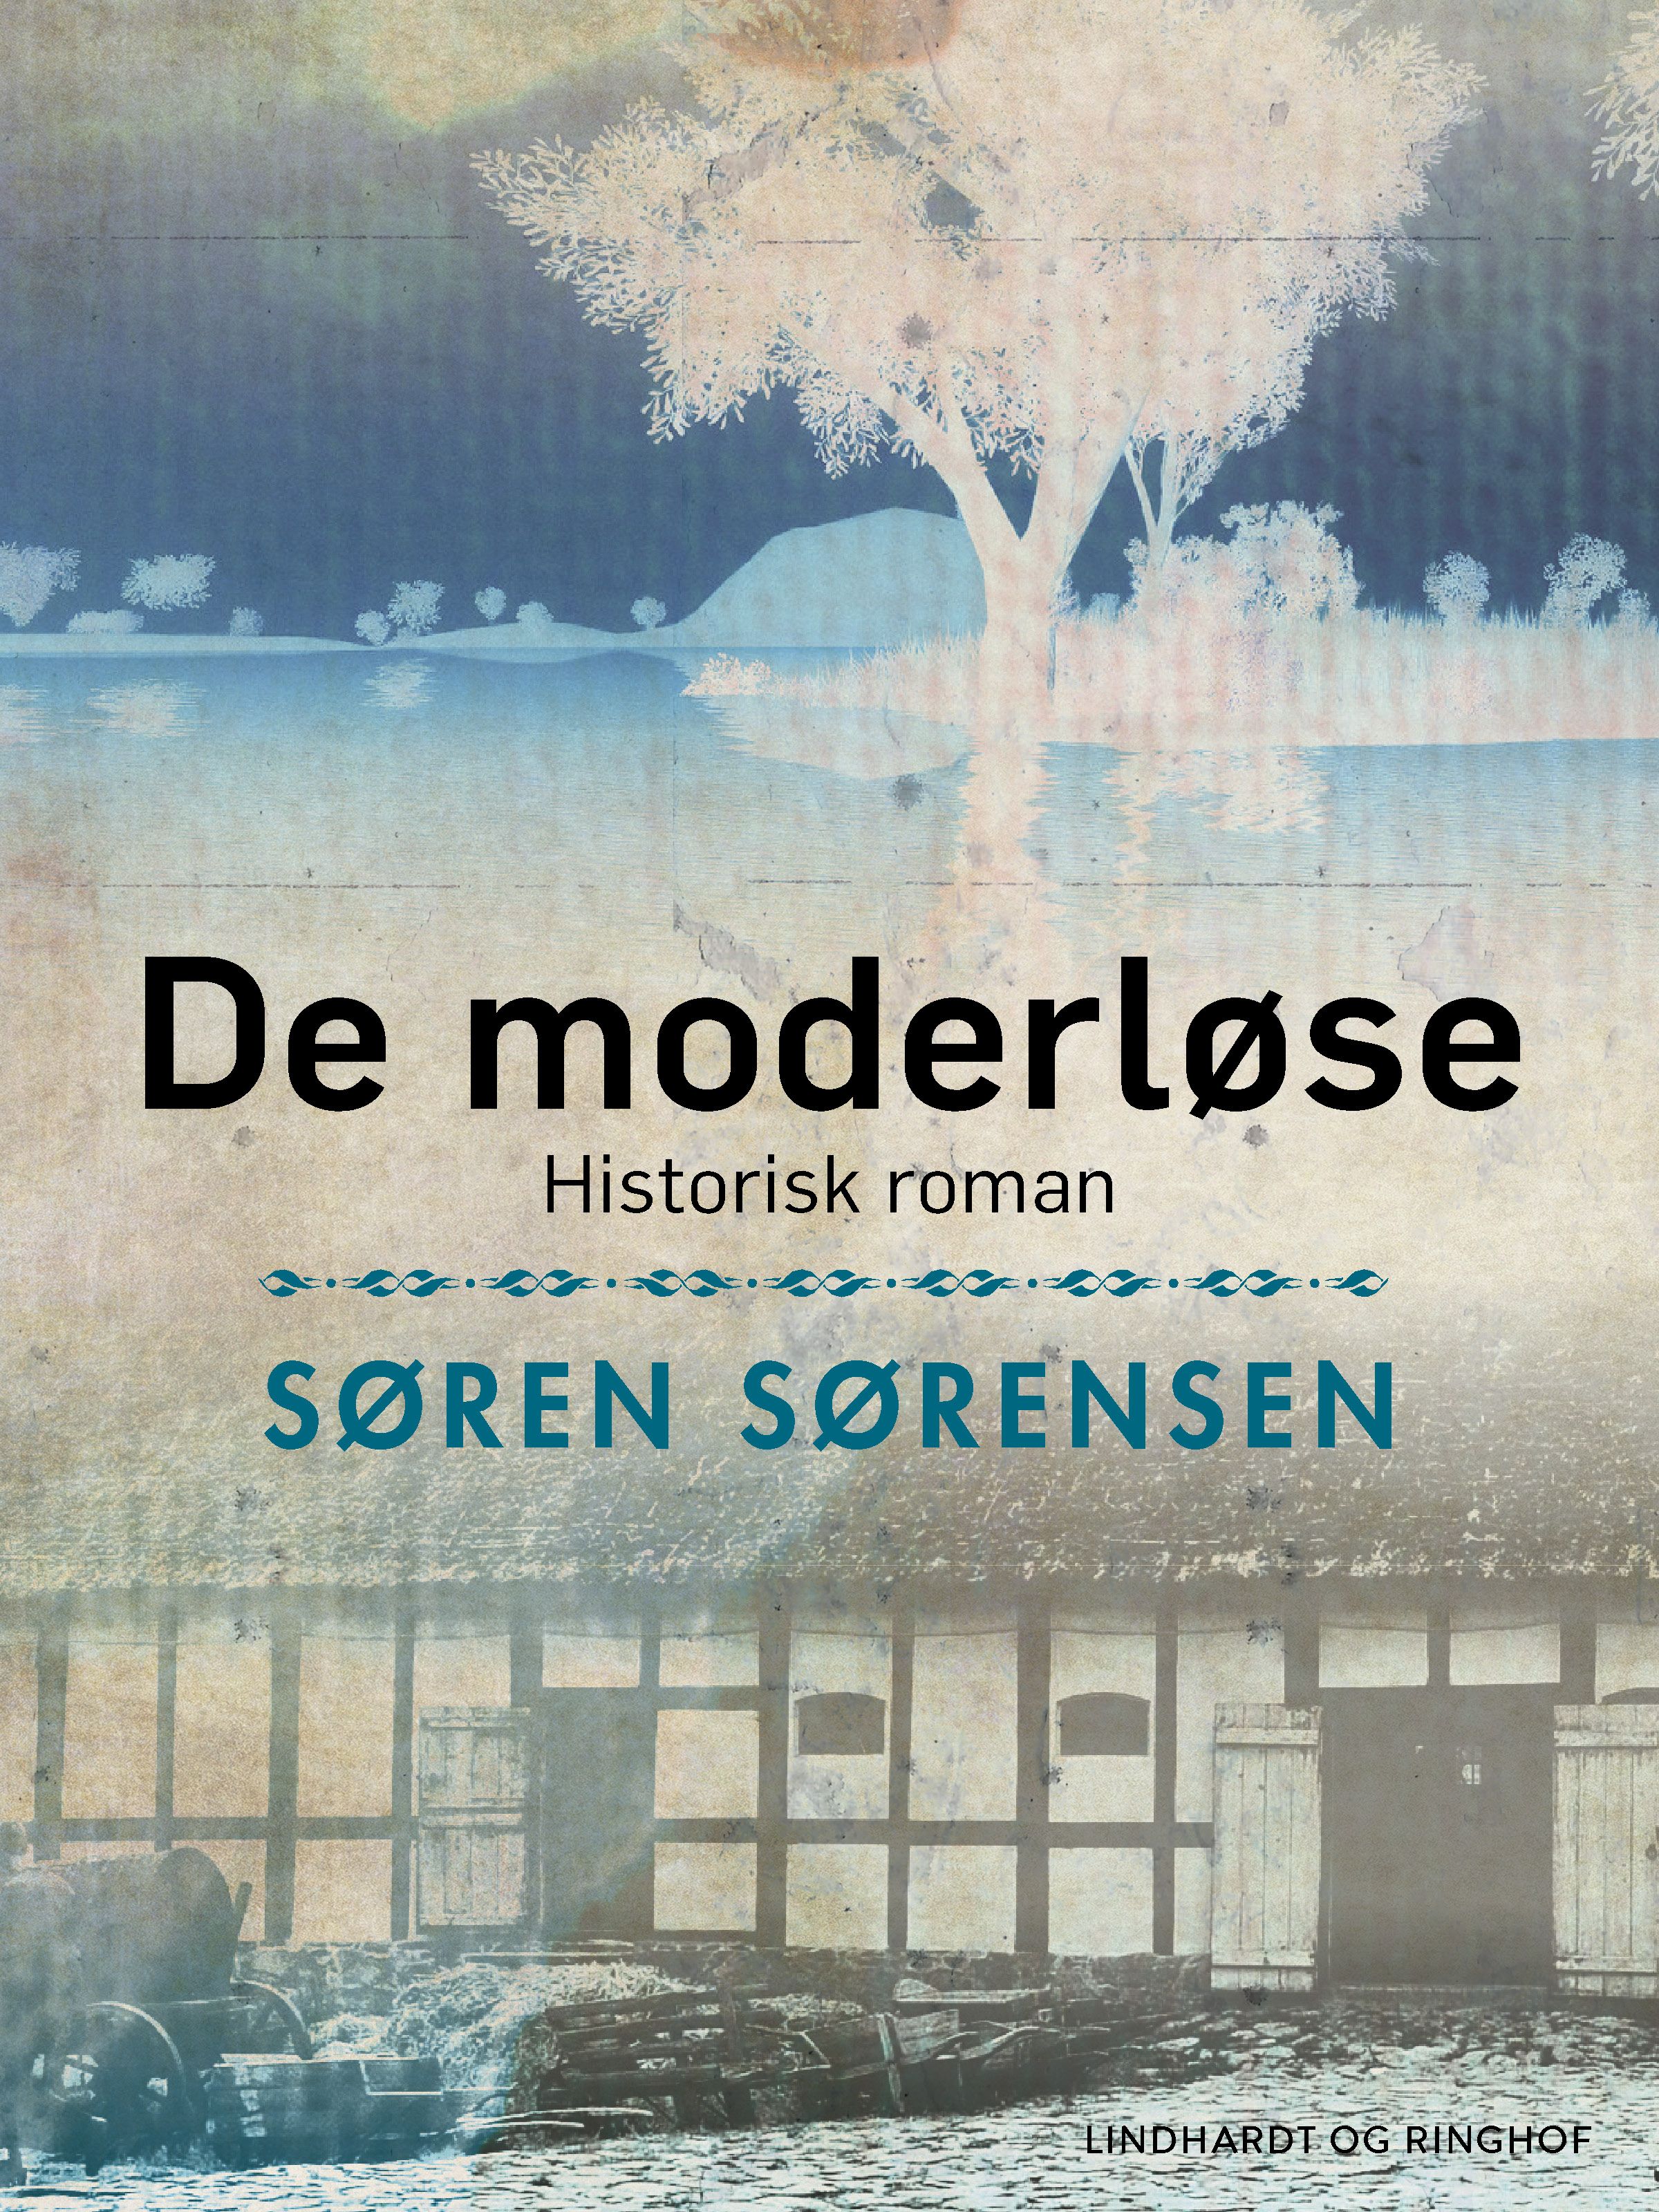 De moderløse. Historisk roman, e-bok av Søren Sørensen